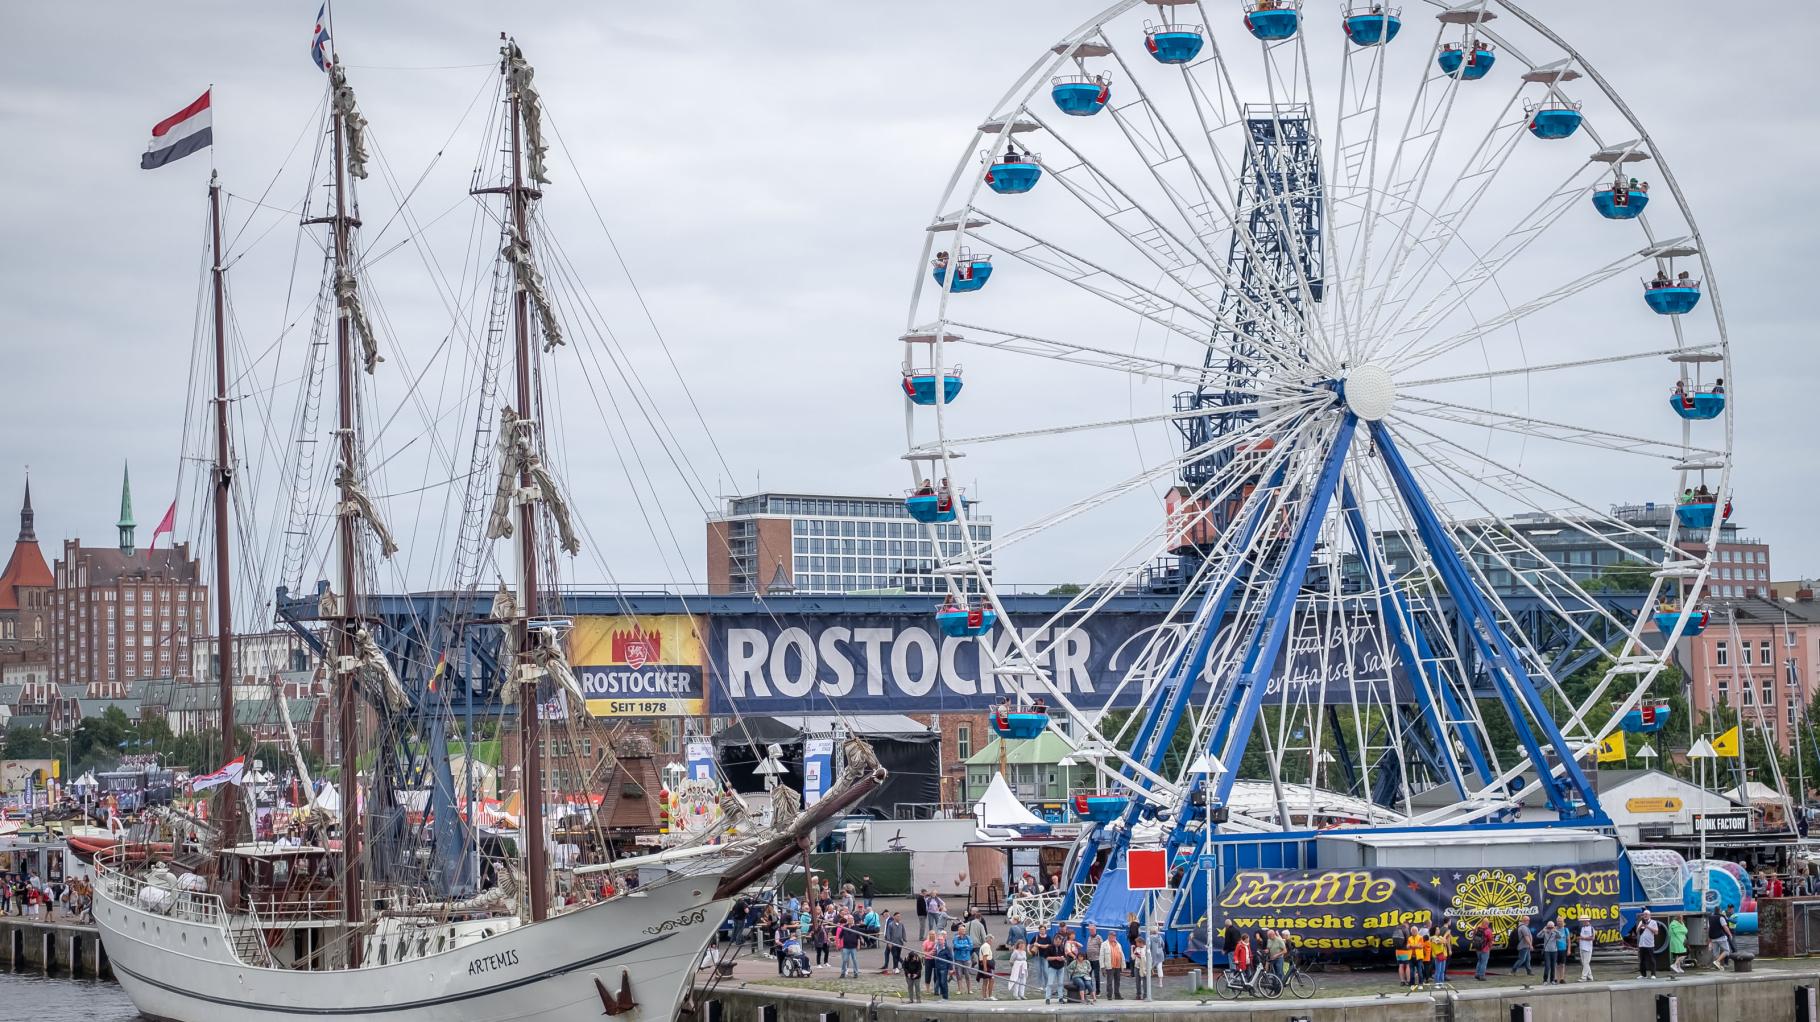 Rostocker Polizei zieht positives Fazit für 32. Hanse Sail